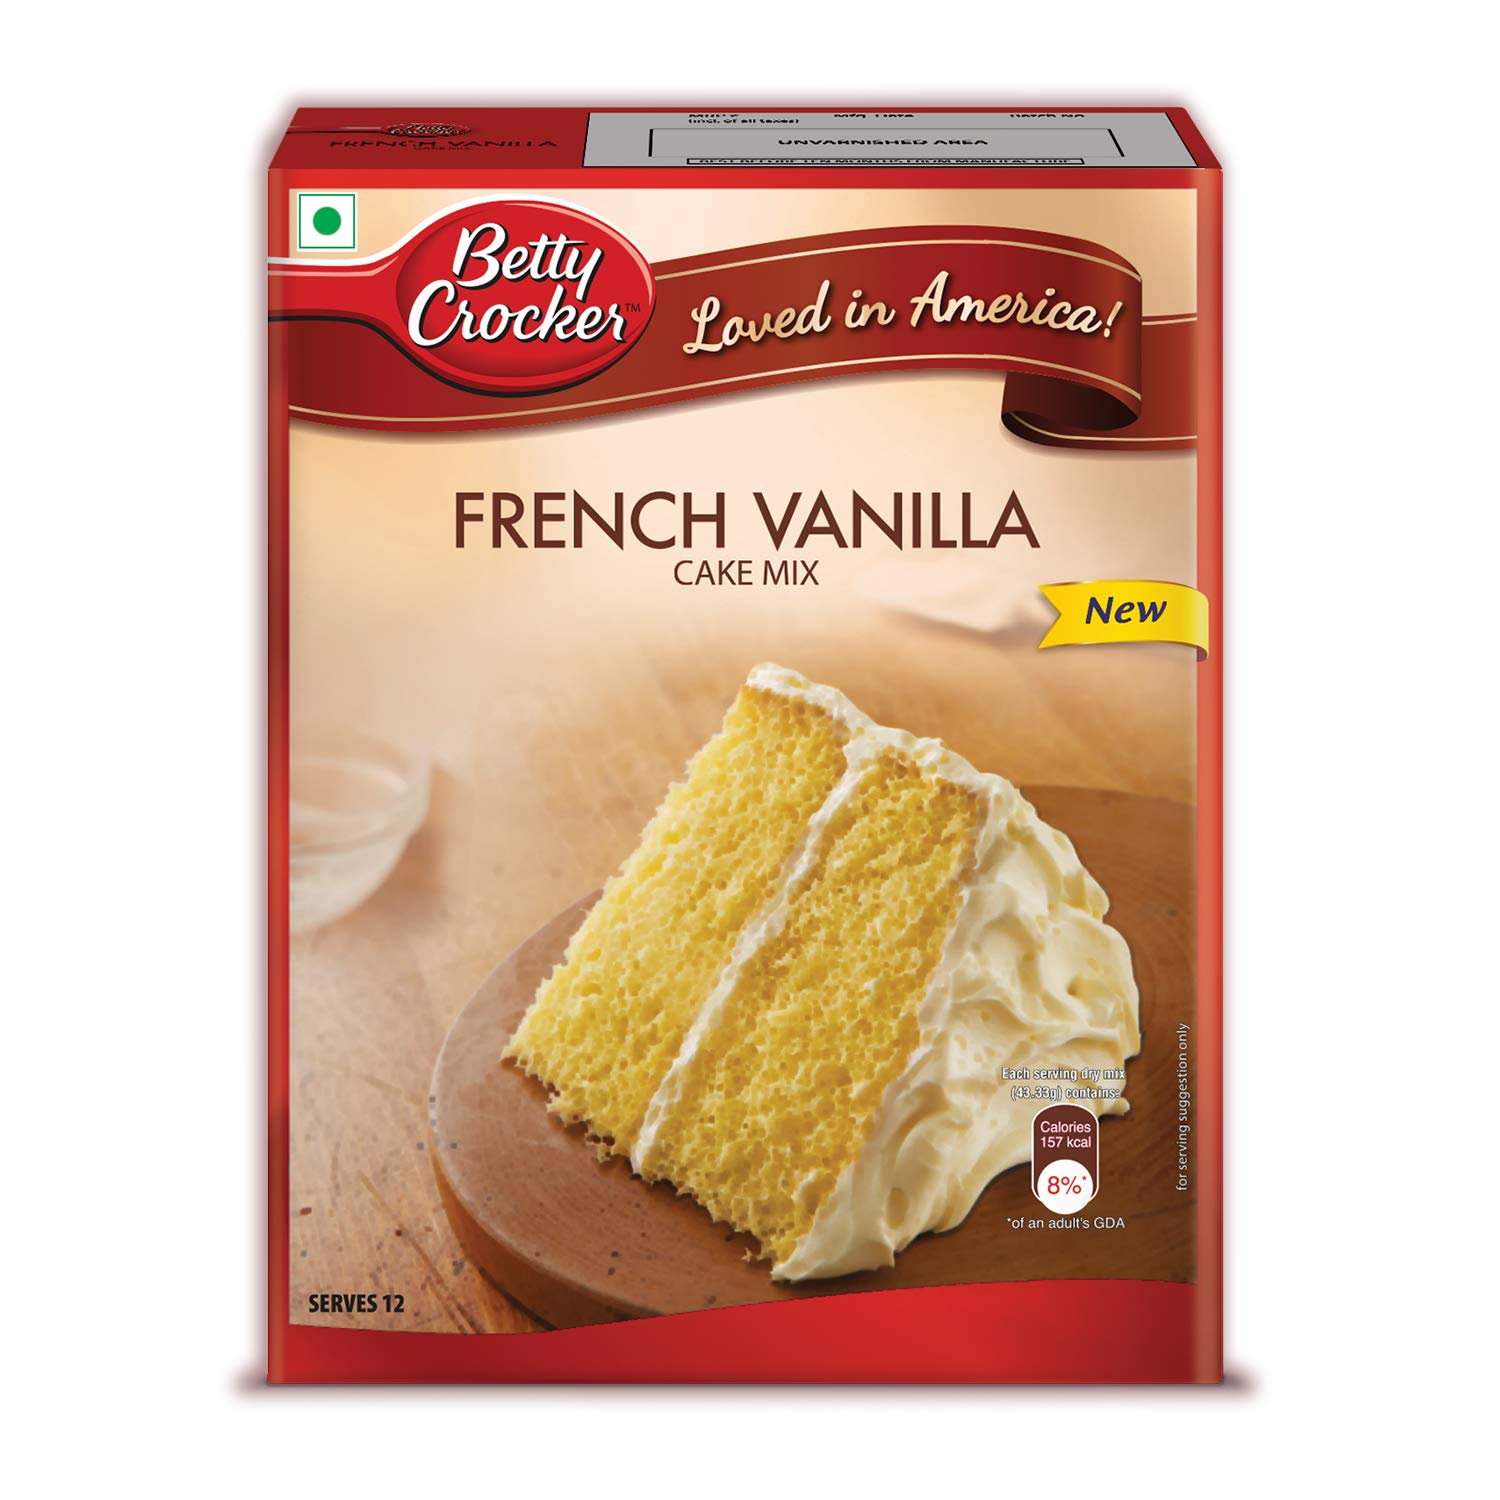 Betty Crocker French Vanilla Cake Mix Image